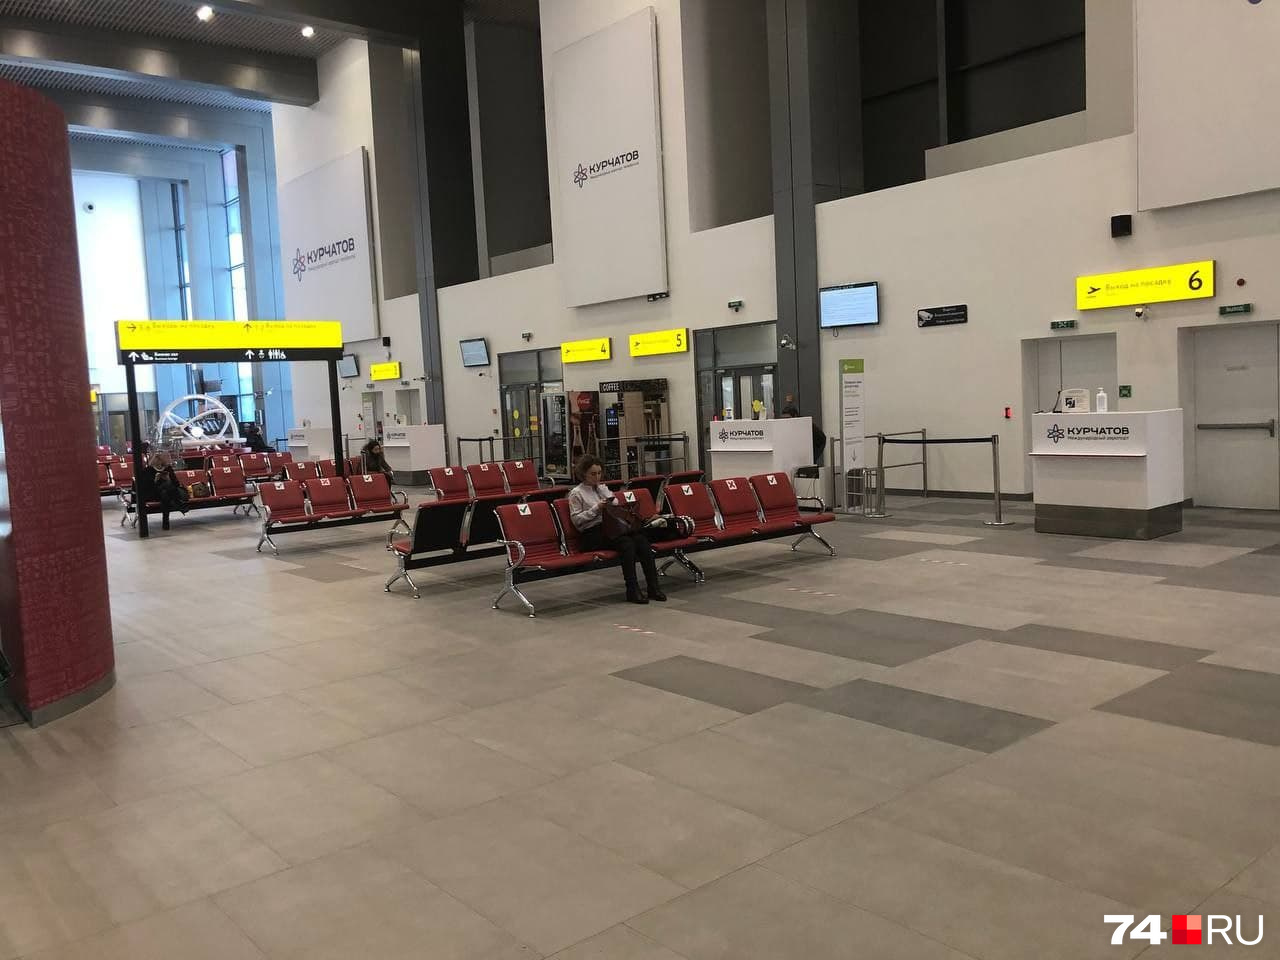 Отправление самолета из Челябинска в Москву отложили больше чем на 4 часа